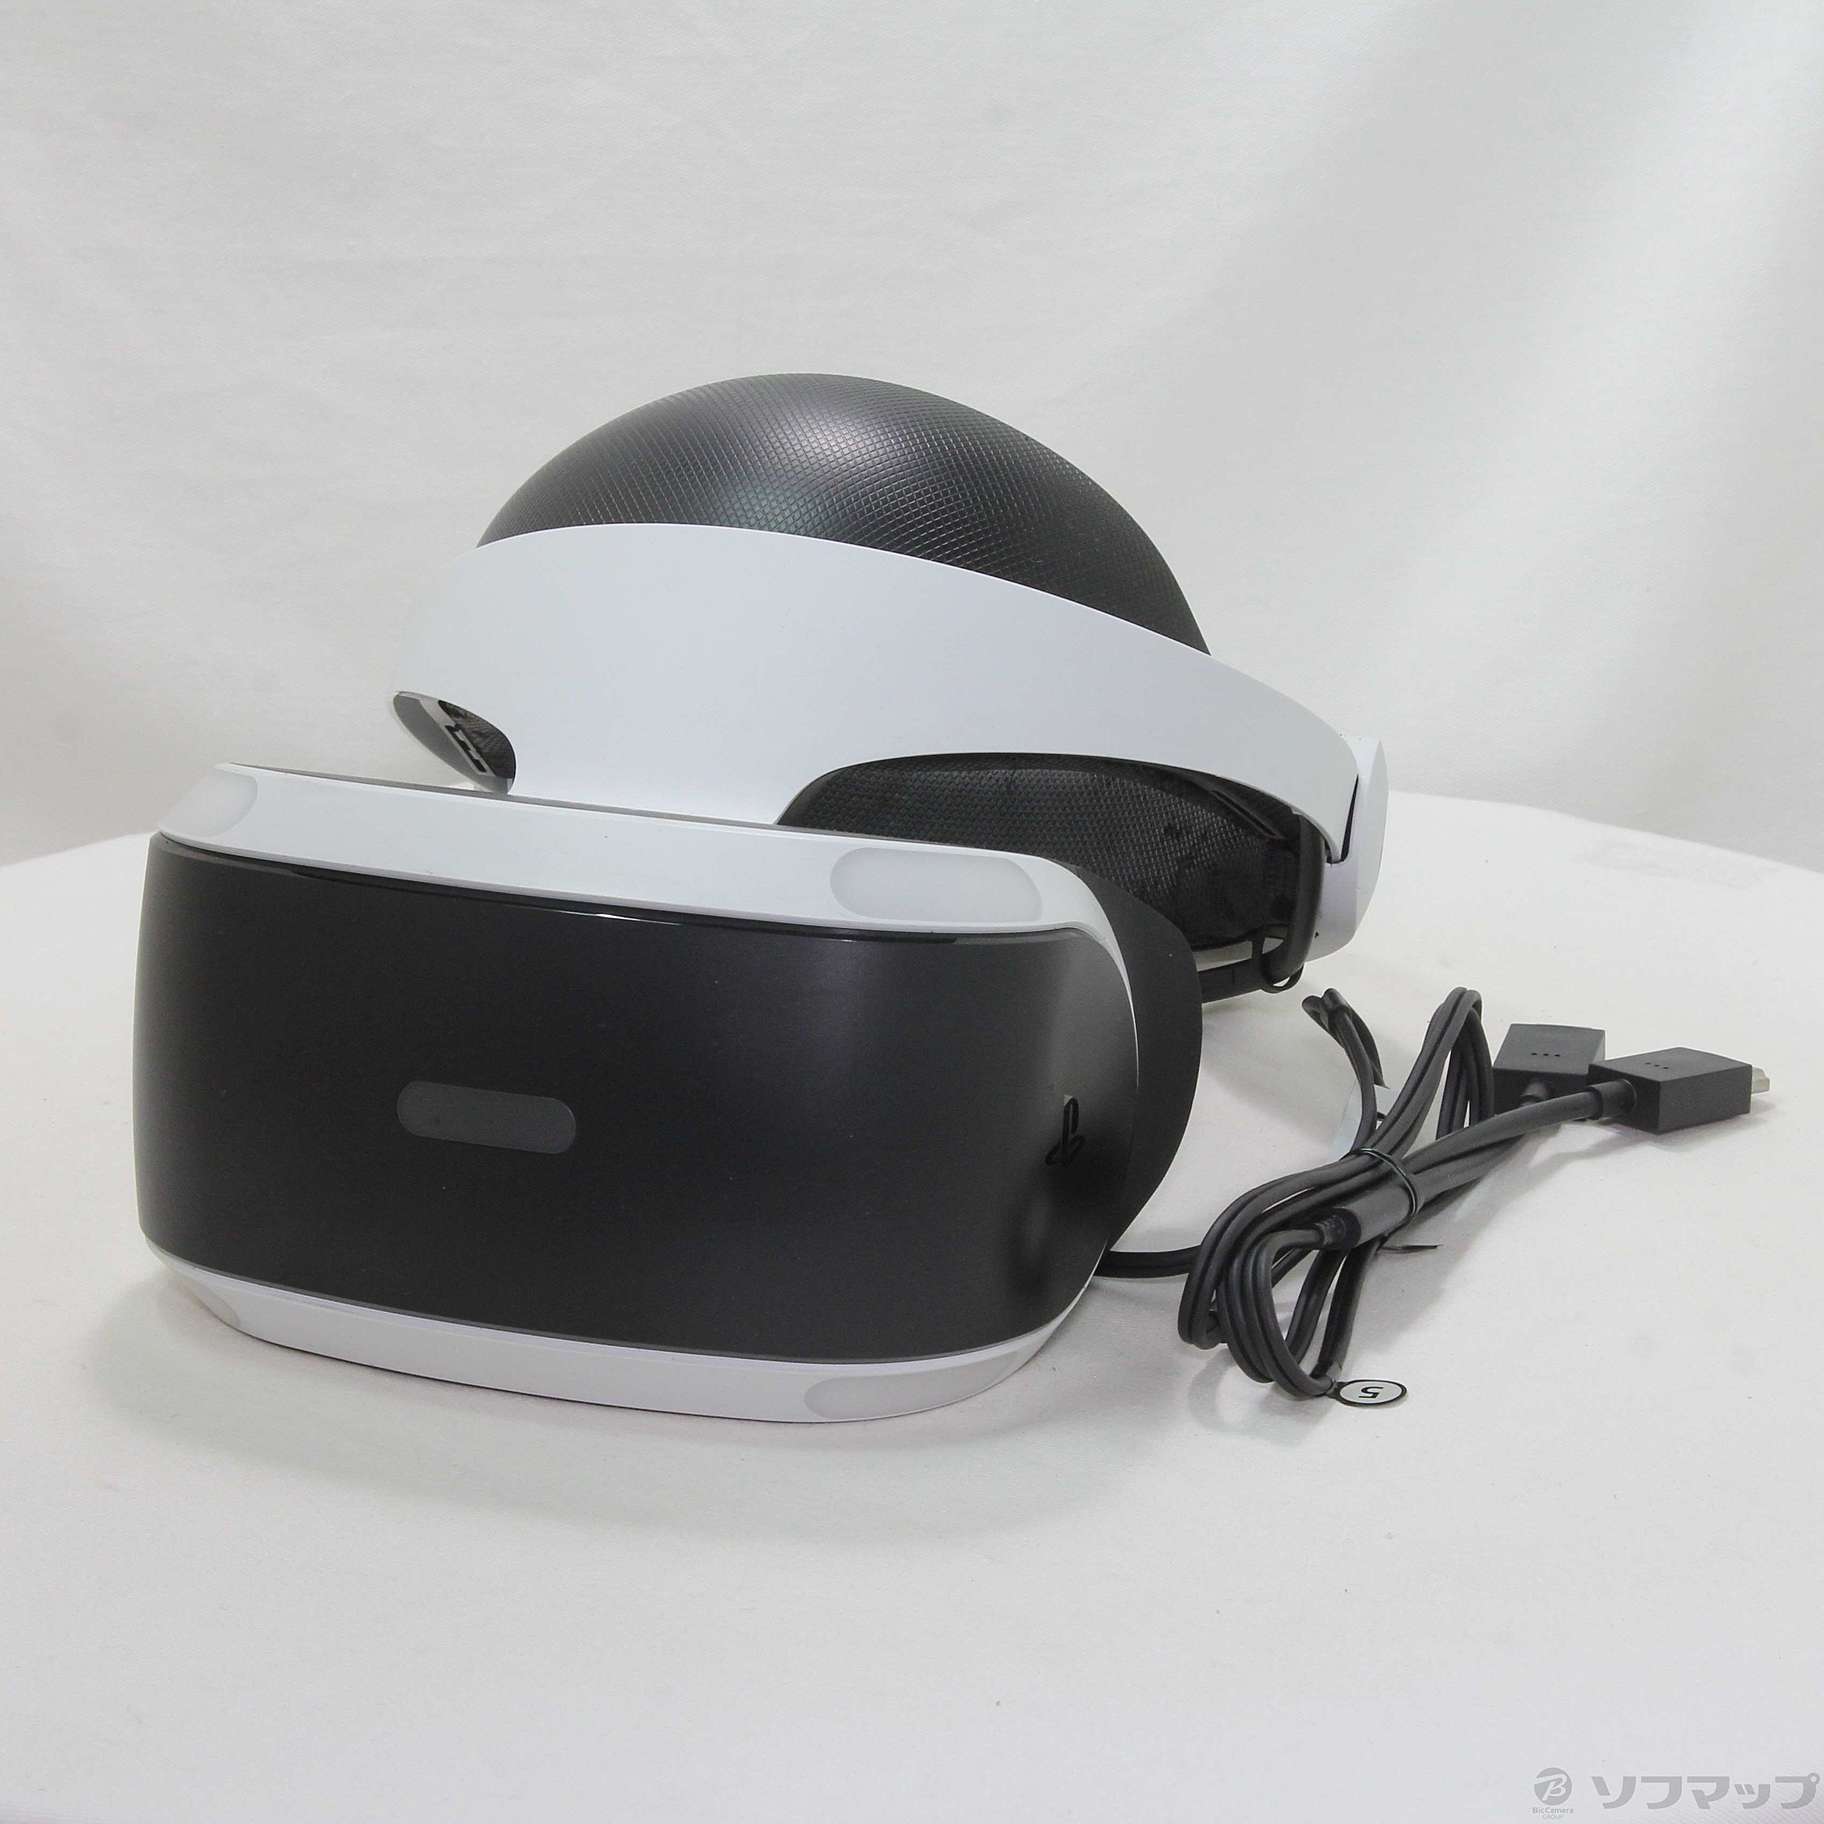 PS4 VRヘッドセット　cuhj-16001